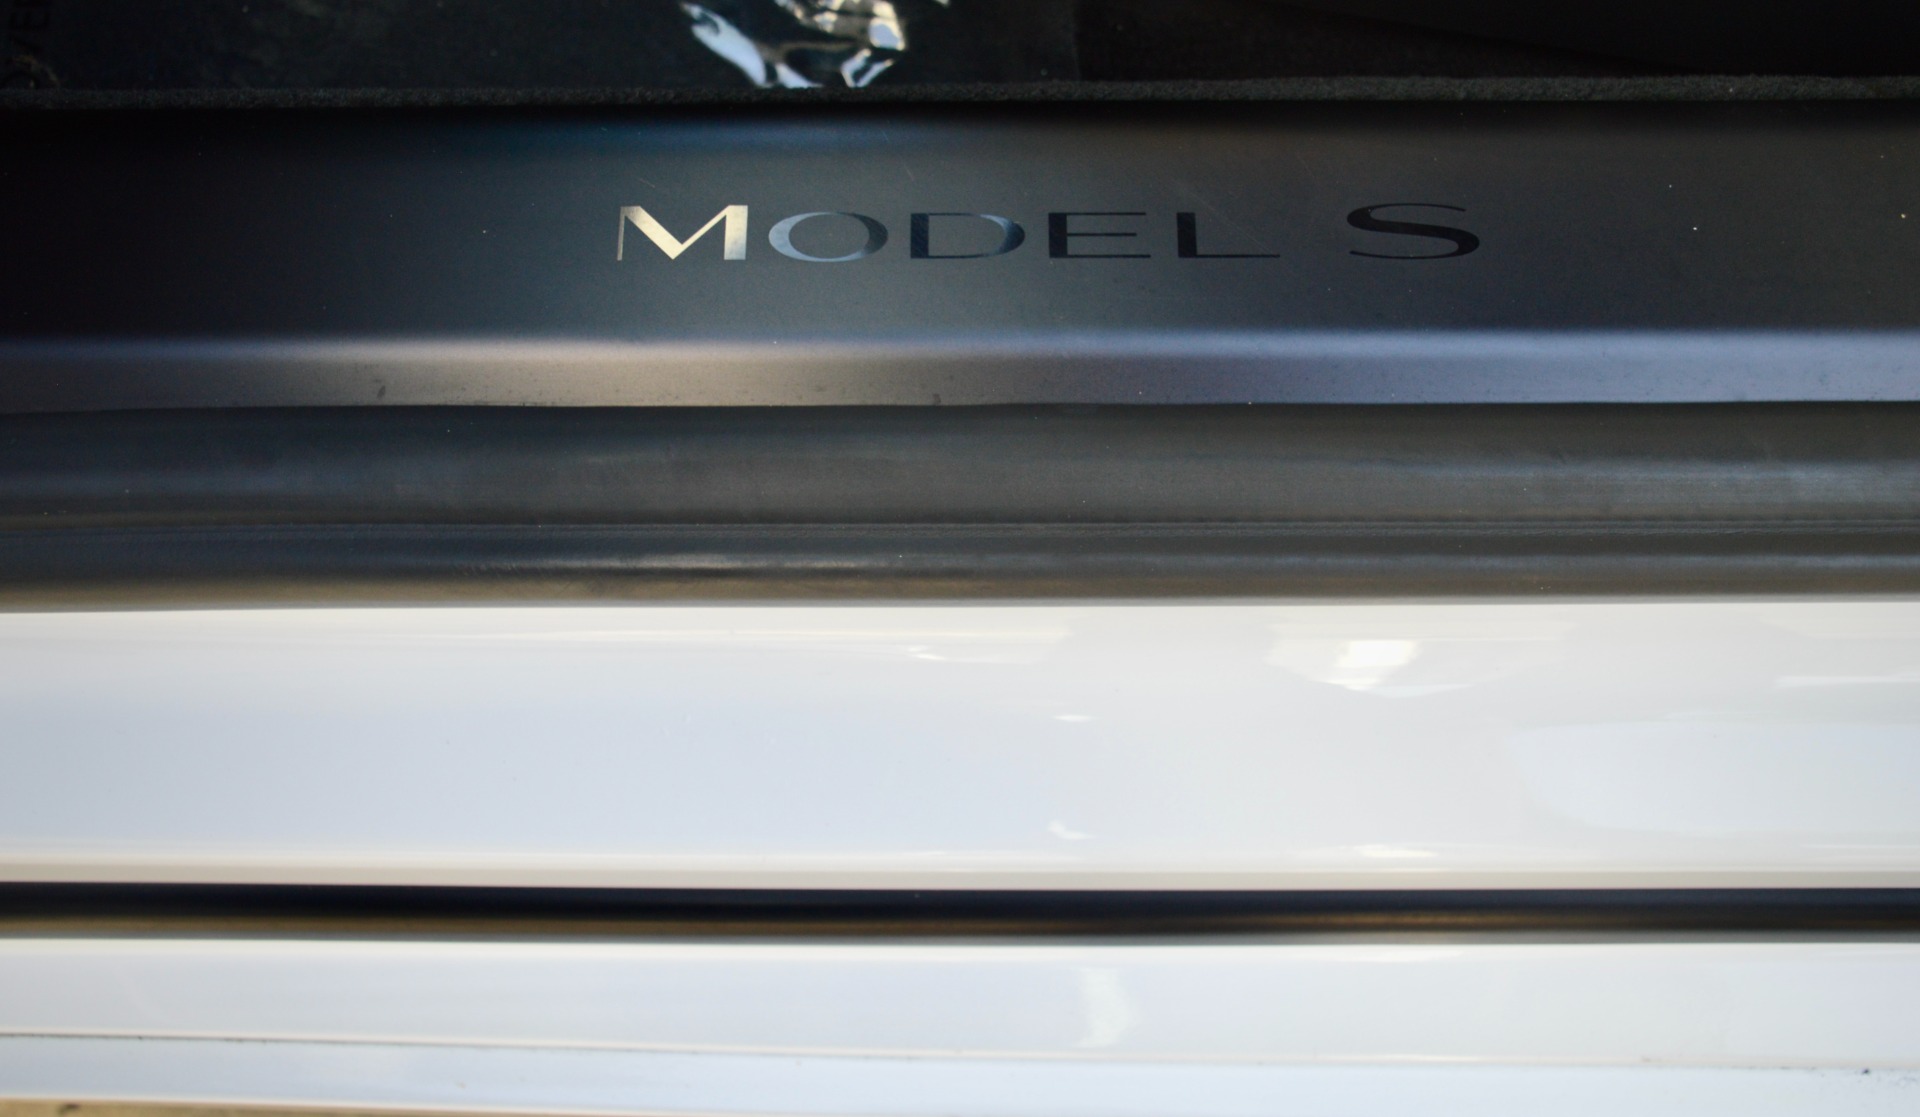 Used-2021-Tesla-Model-S-Plaid